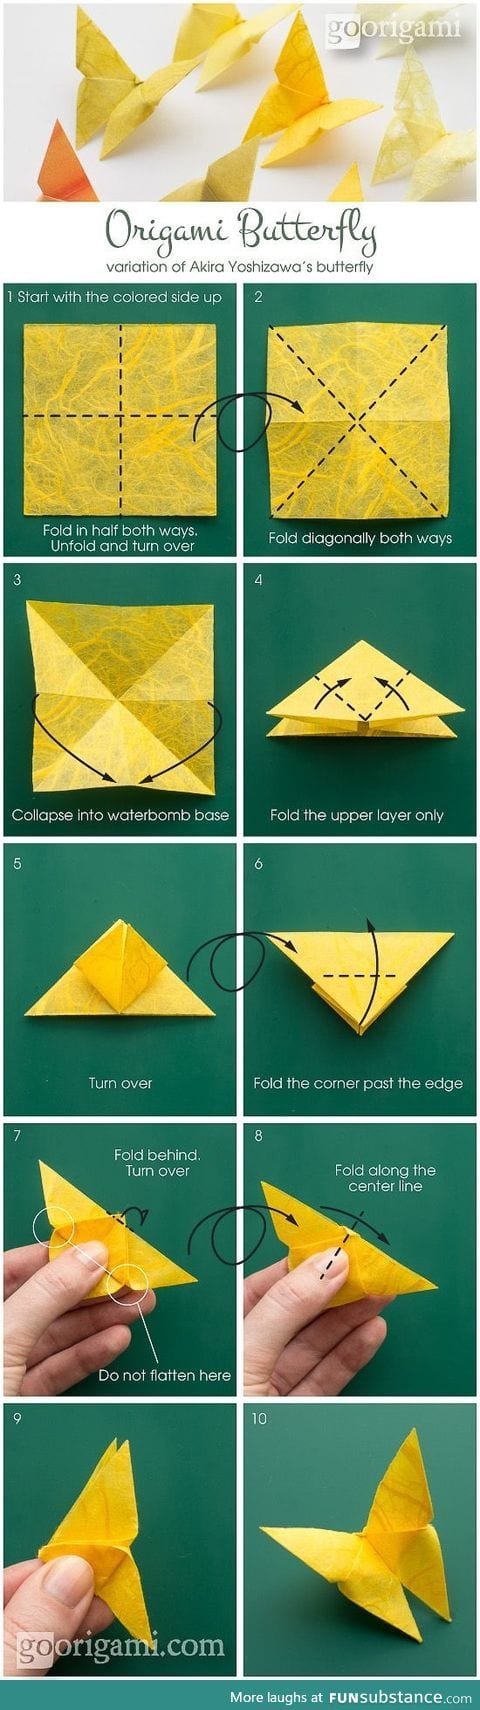 Go origami